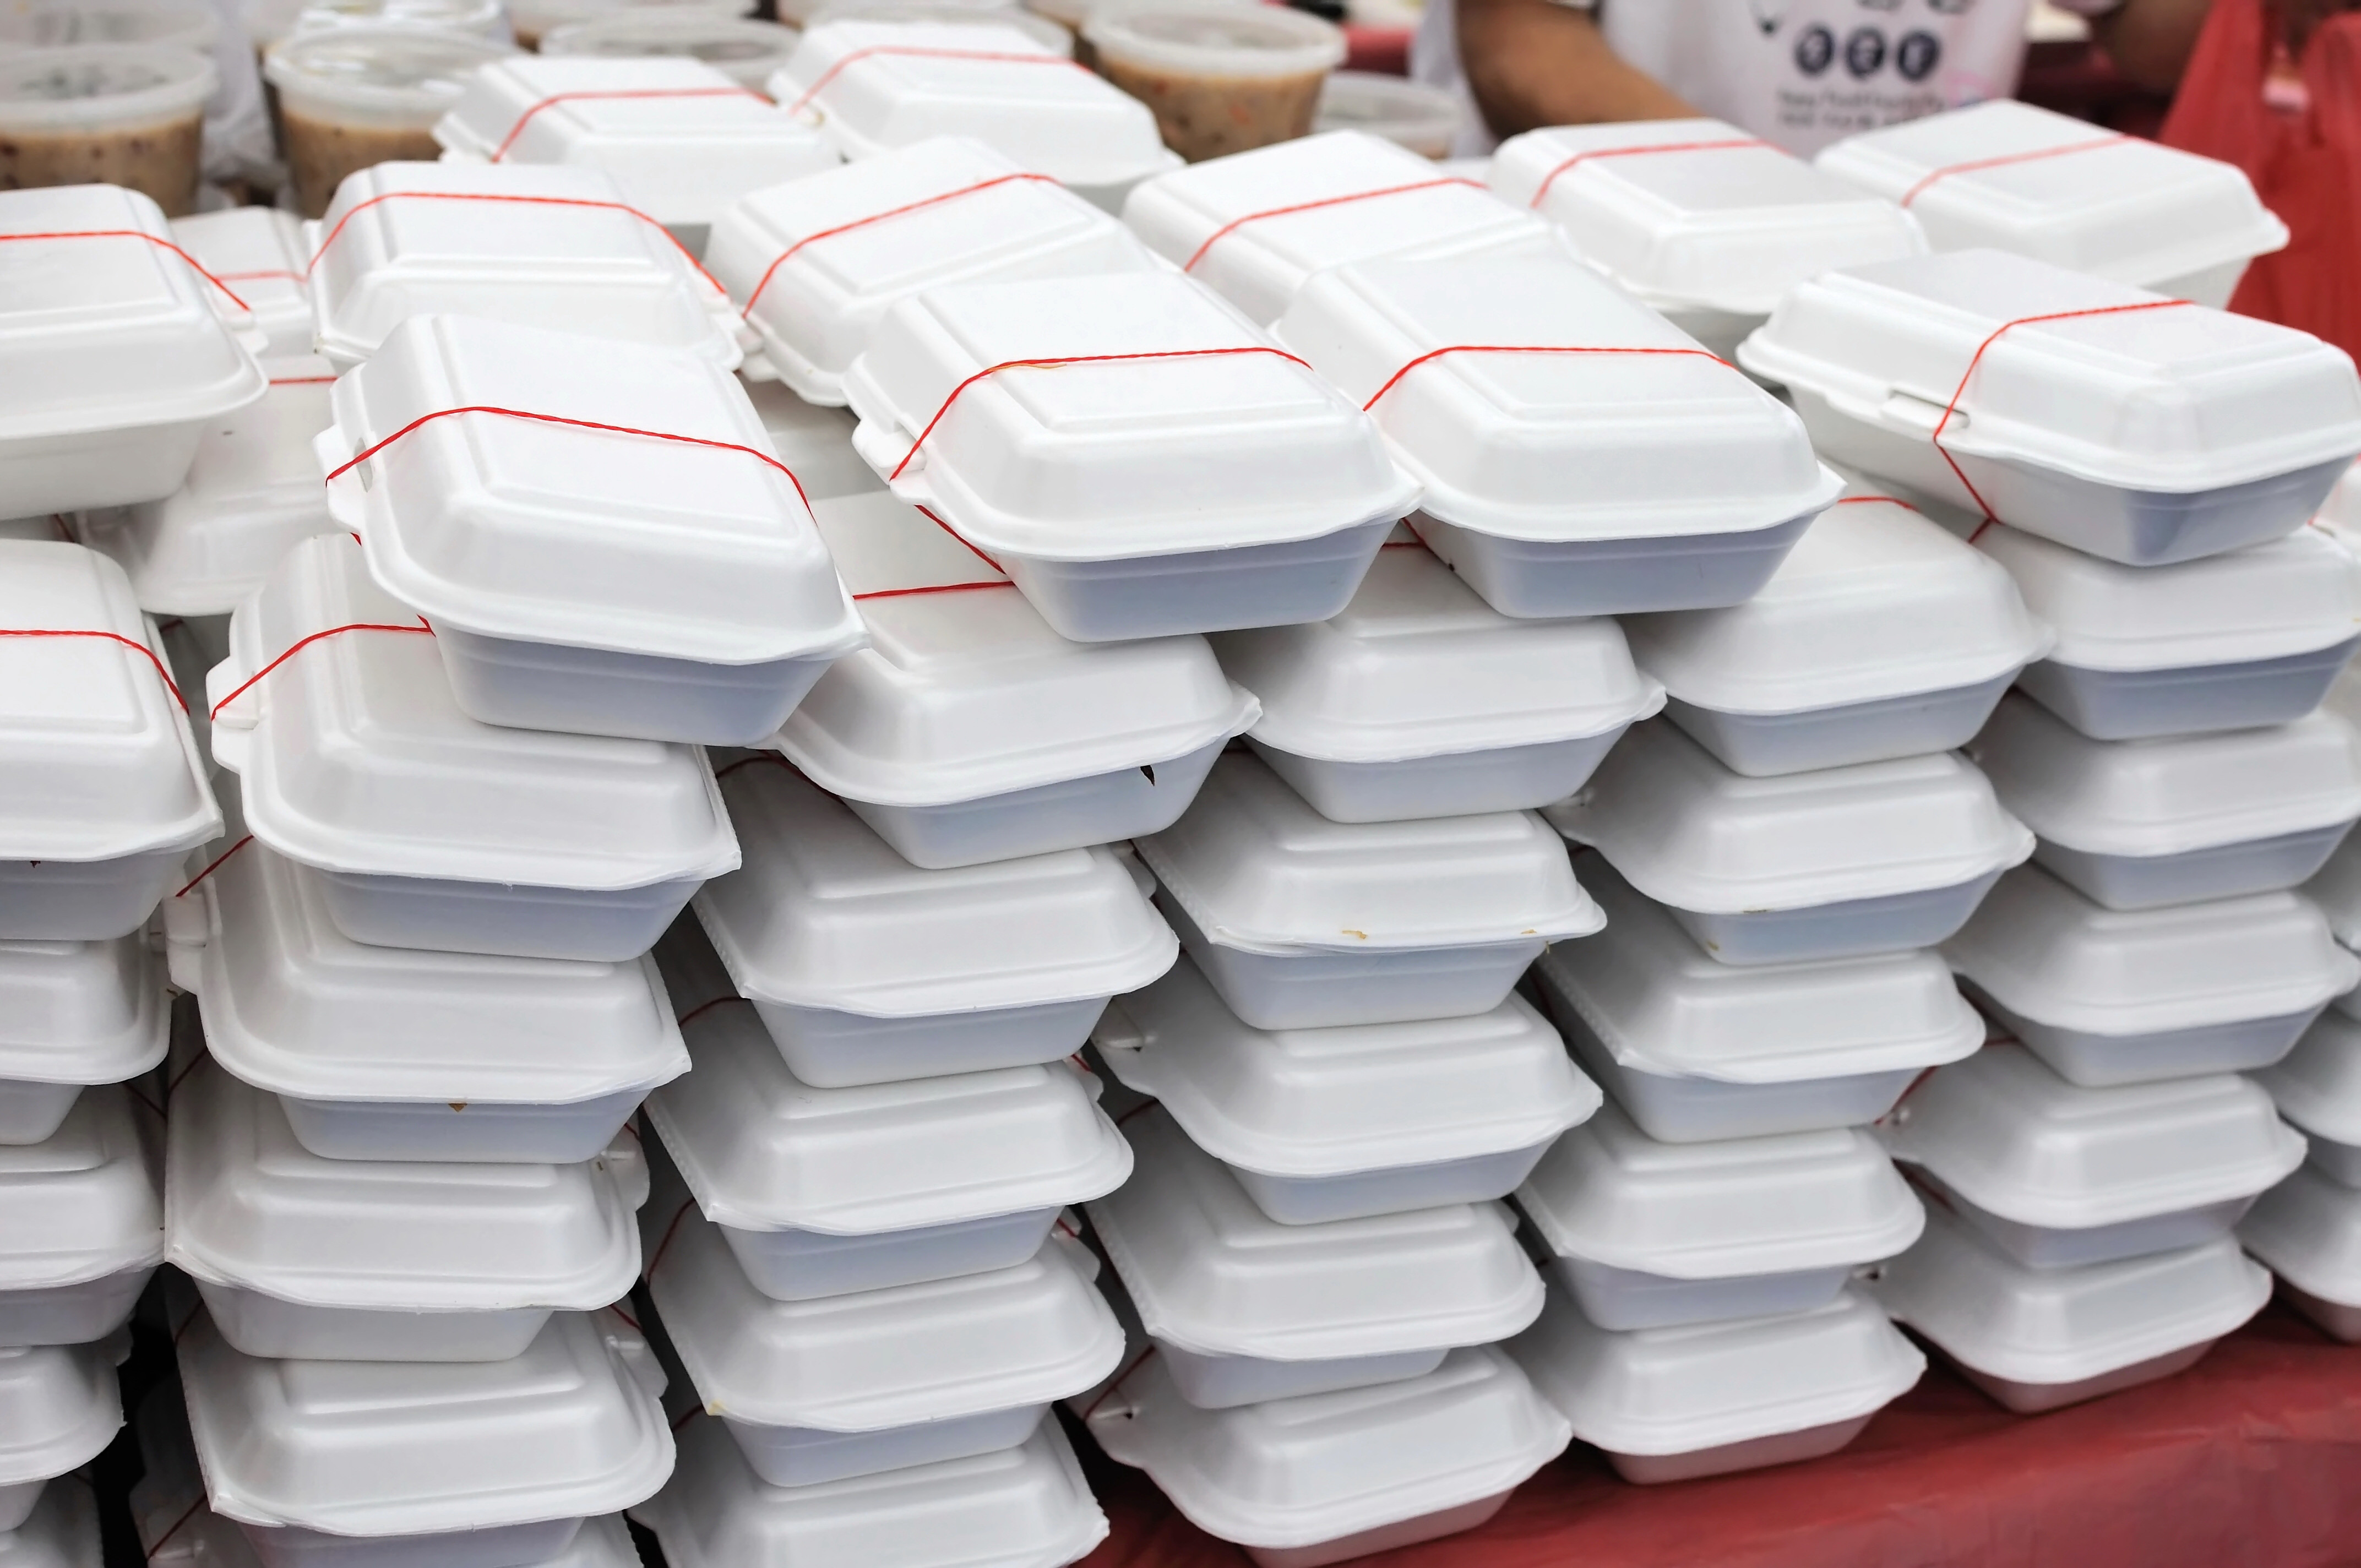 Macao bans polystyrene takeaway boxes